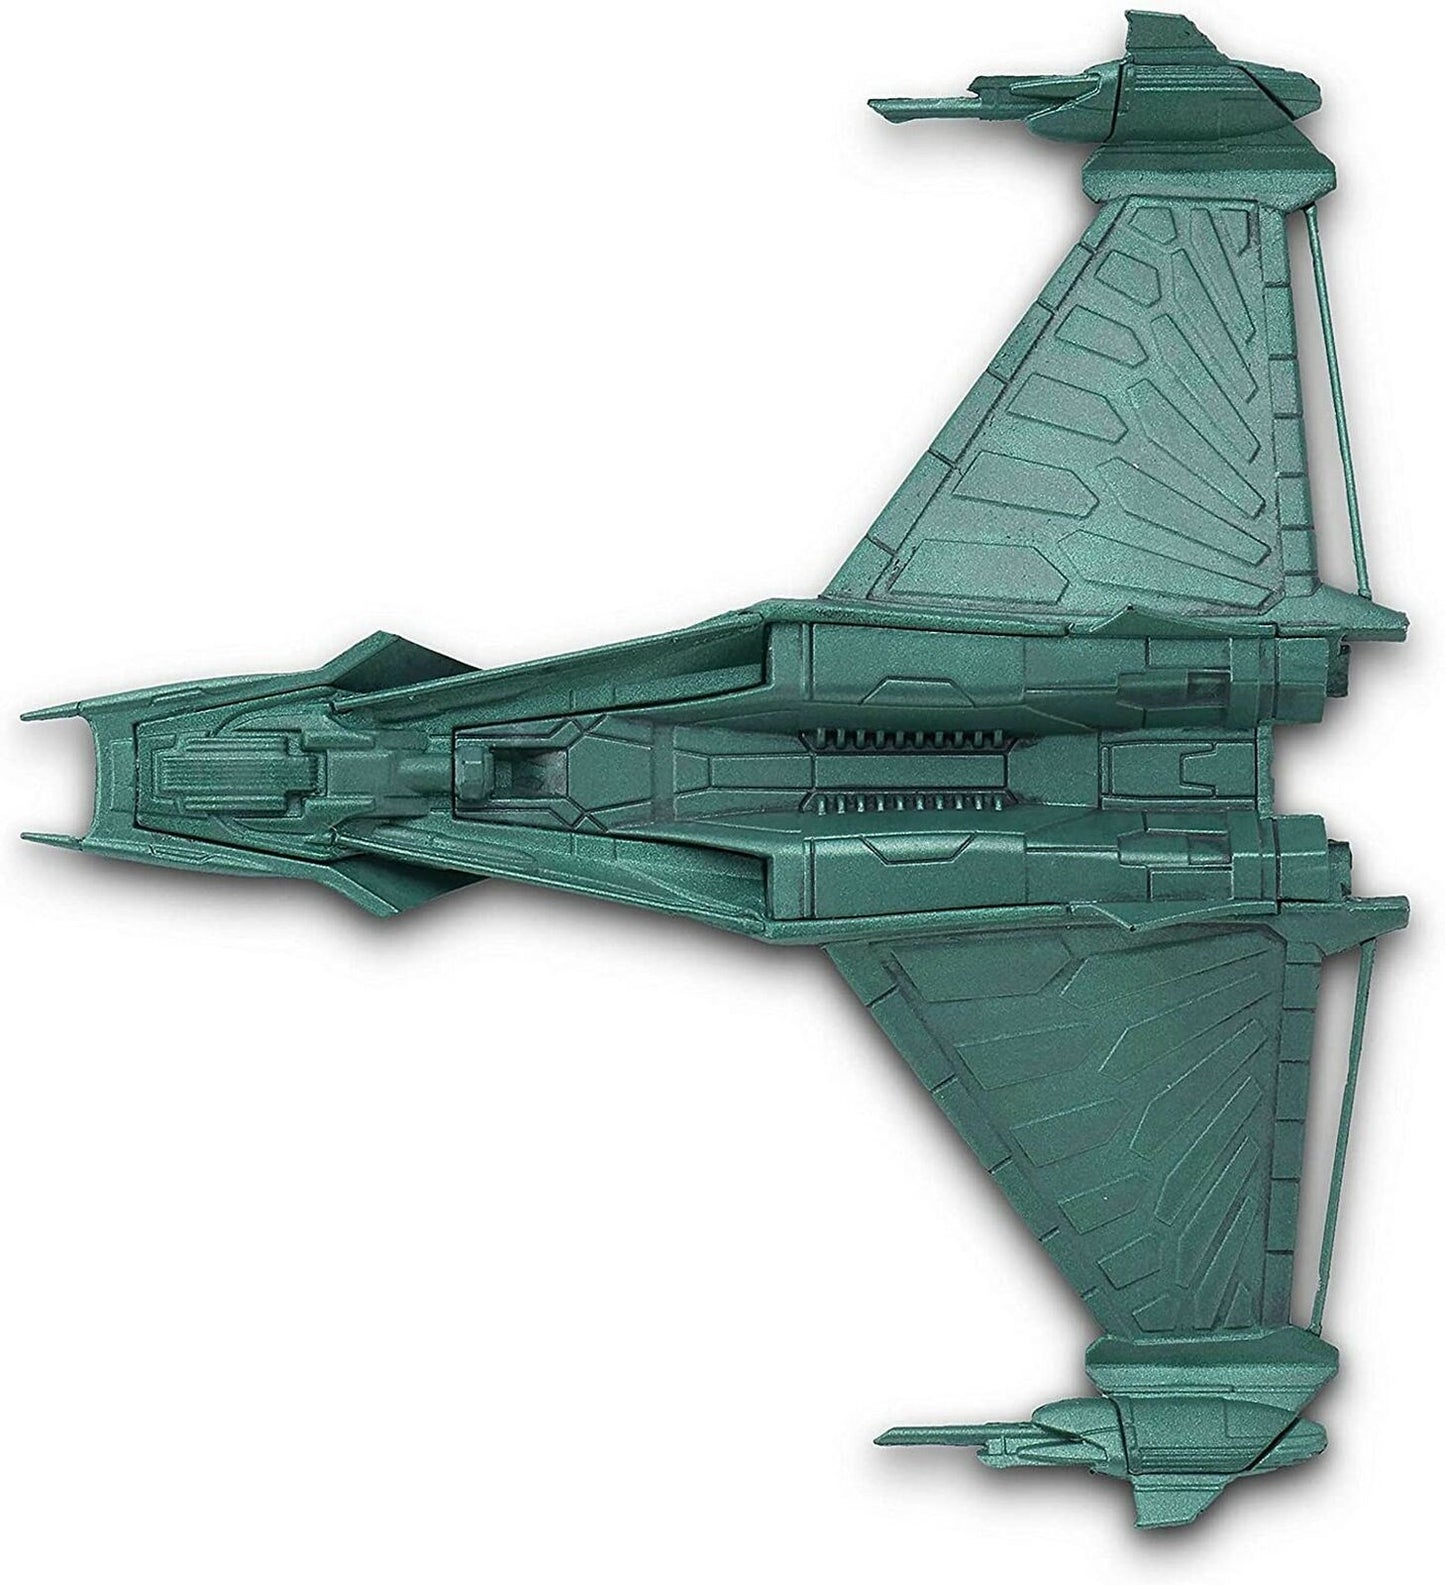 #53 Klingon Augments' Starship Die-Cast Model (Eaglemoss / Star Trek)